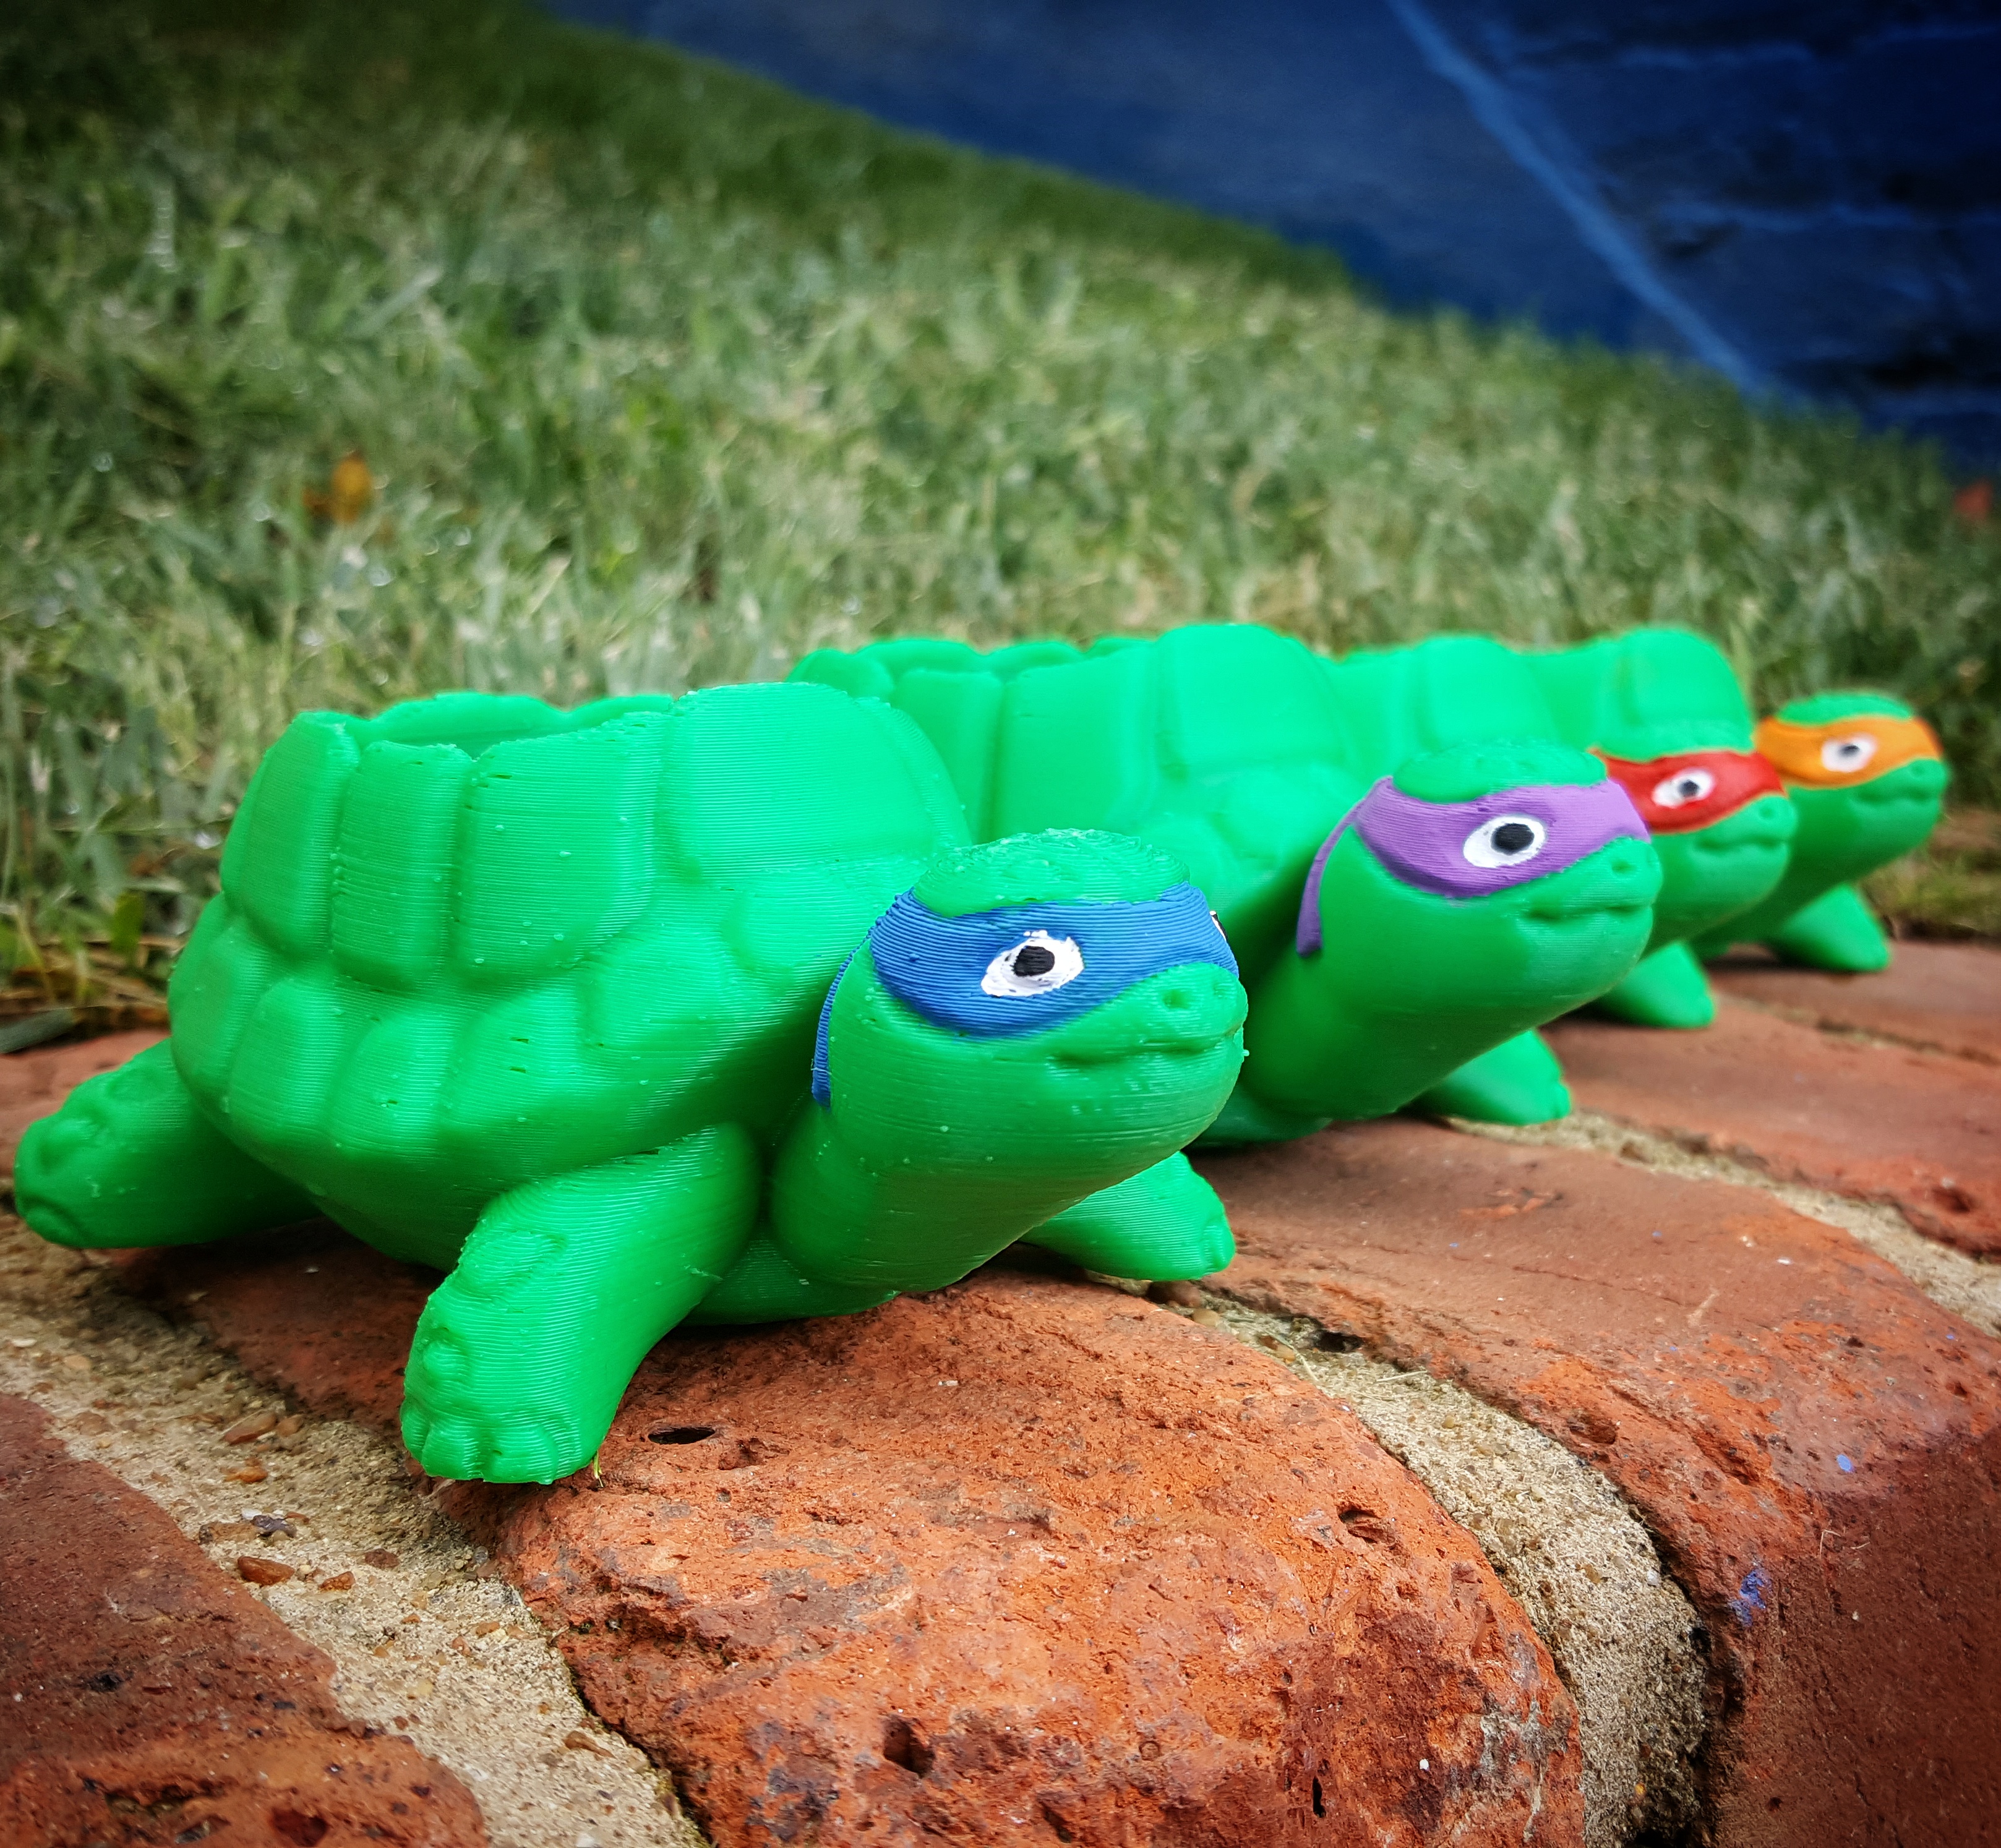 Teenage Mutant Ninja Turtles-inspired Turtle Planter!